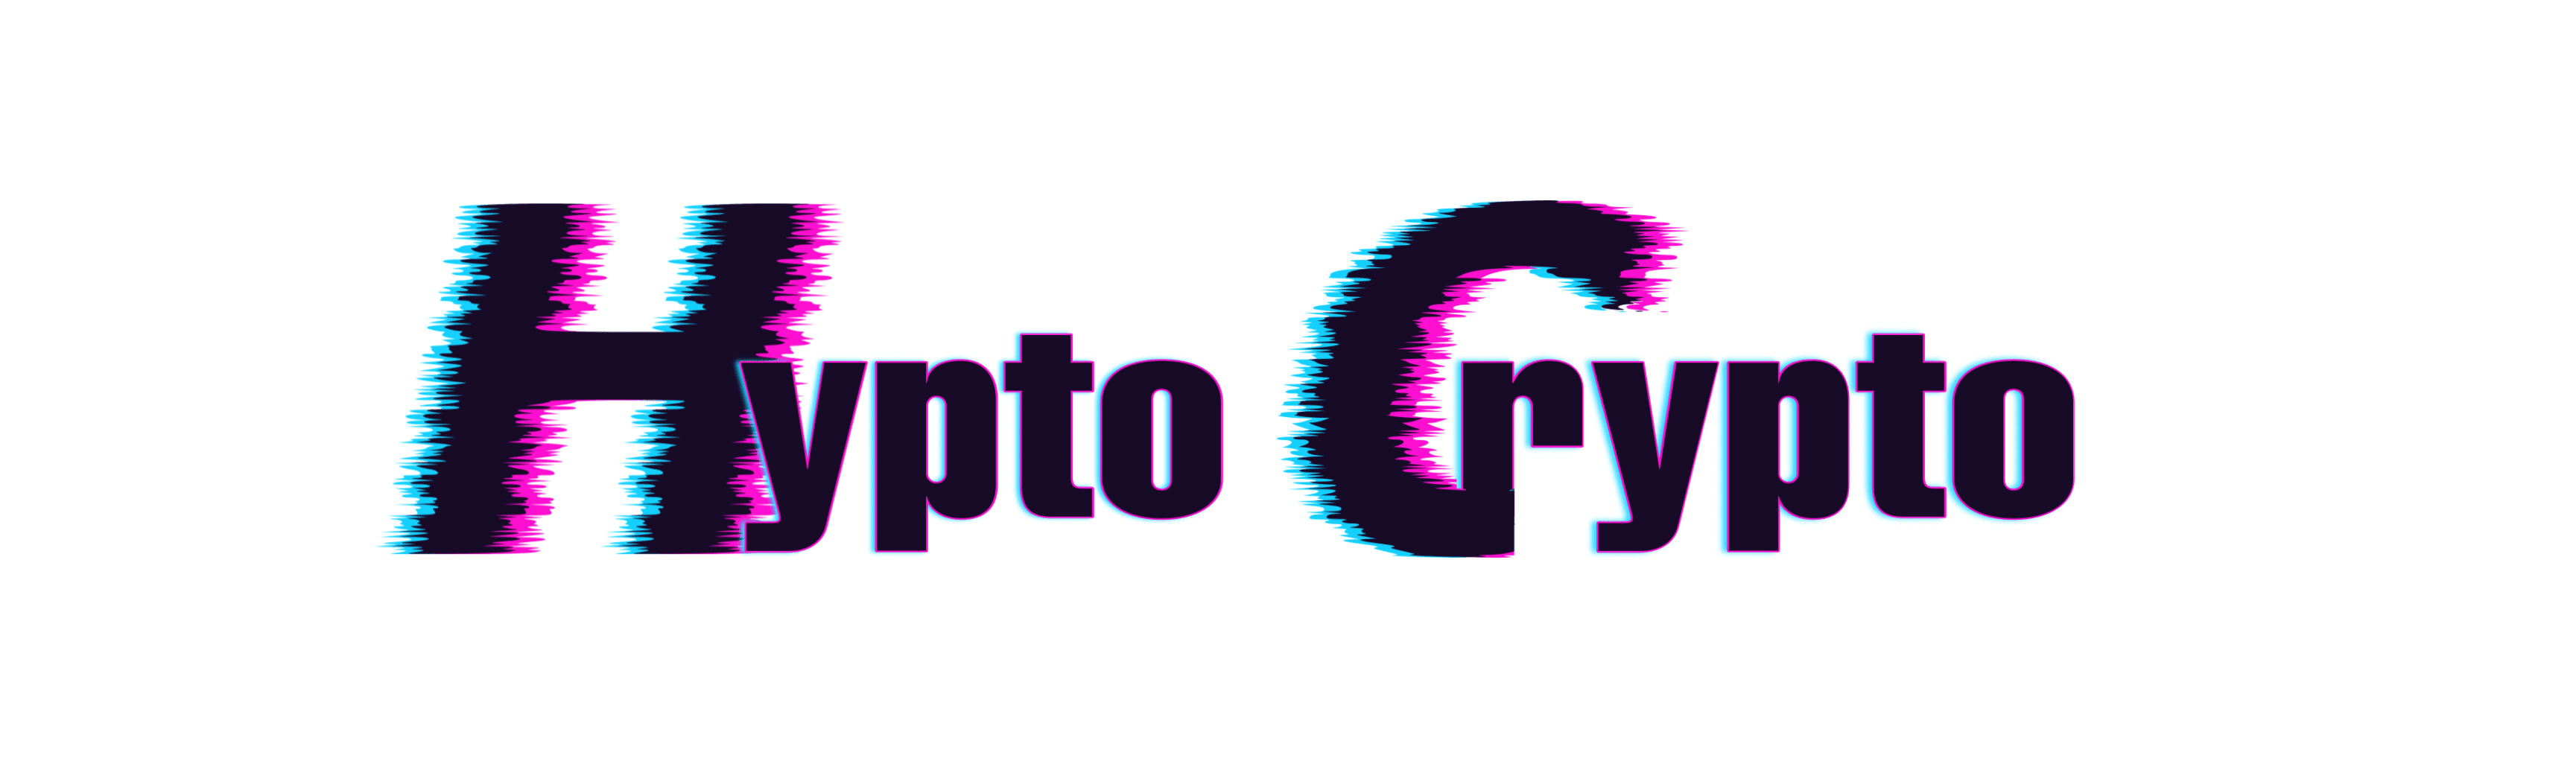 HyptoCrypto bannière